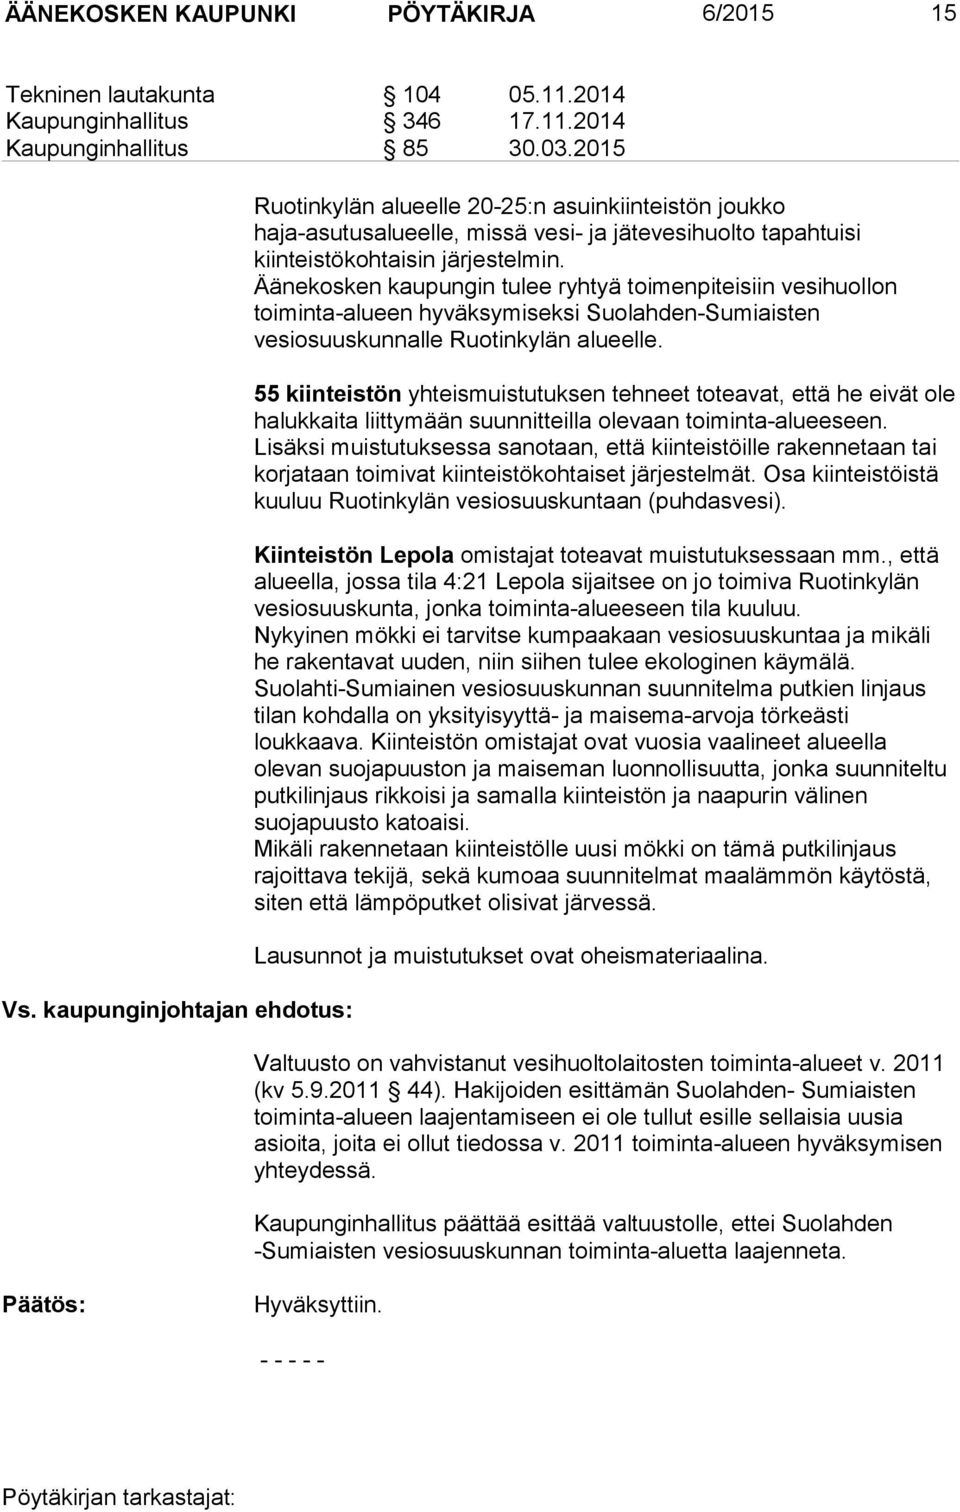 Äänekosken kaupungin tulee ryhtyä toimenpiteisiin vesihuollon toiminta-alueen hyväksymiseksi Suolahden-Sumiaisten vesiosuuskunnalle Ruotinkylän alueelle.